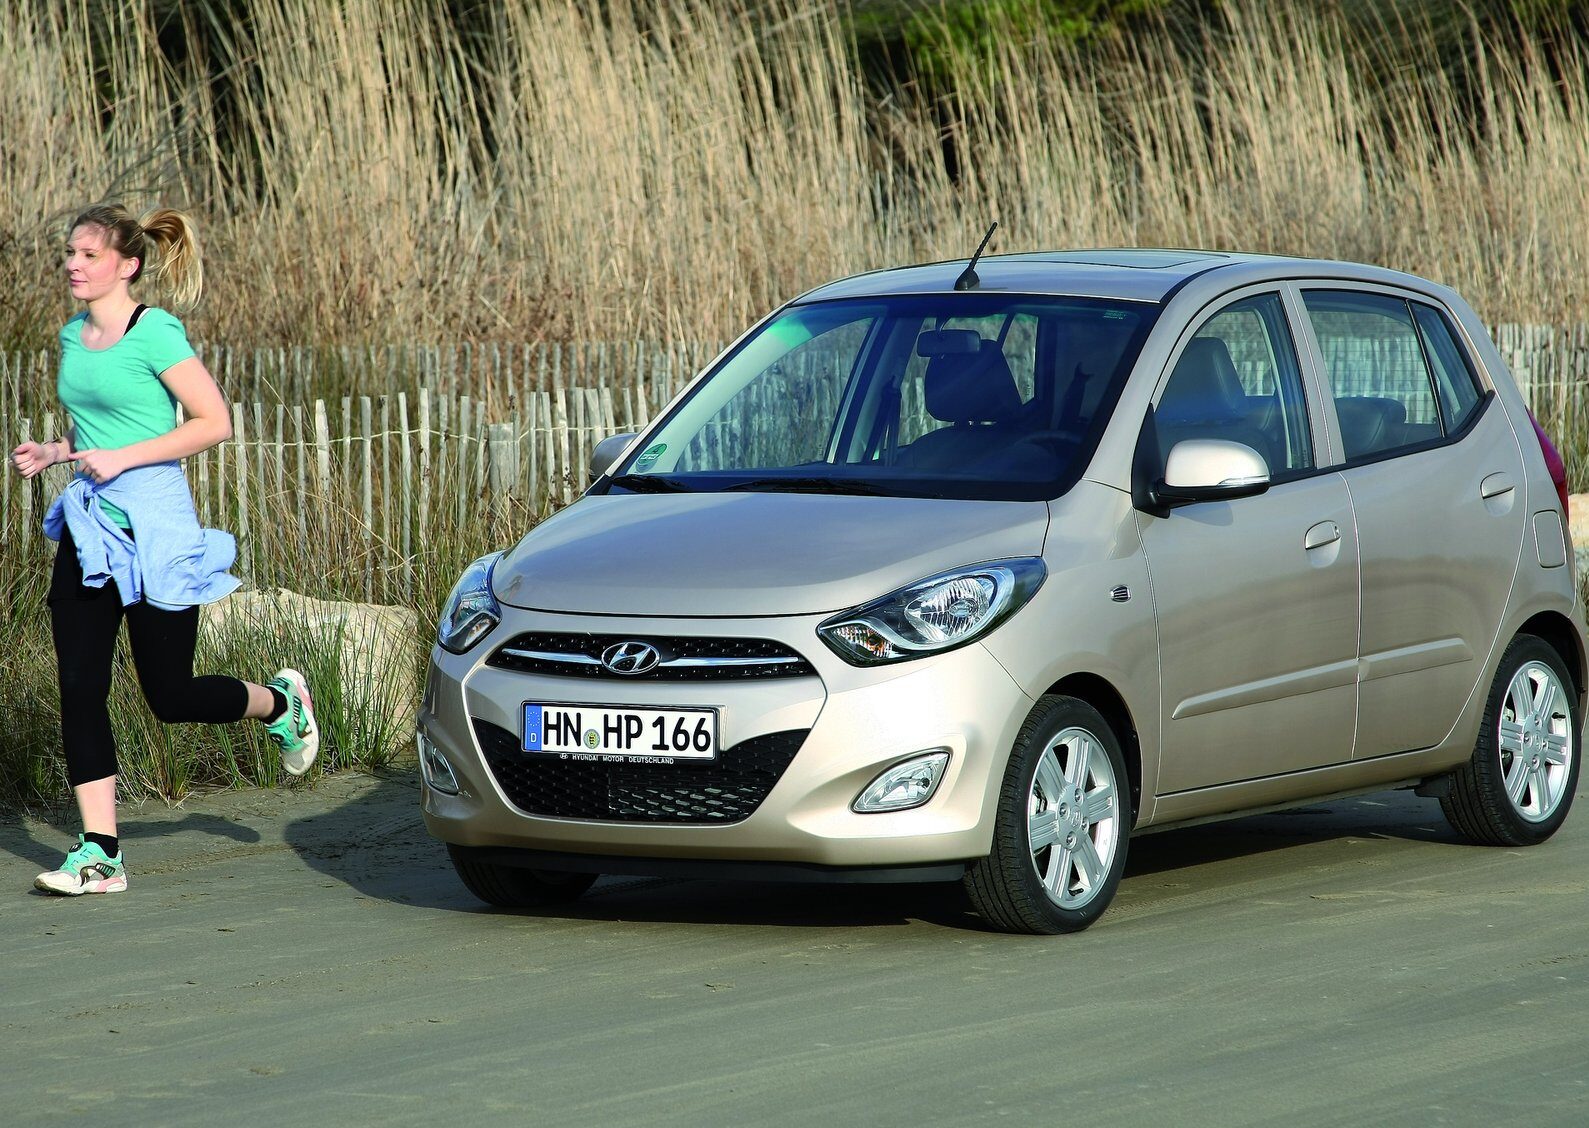 Tải ảnh Hyundai i10 Hatchback chất lượng cao miễn phí 17